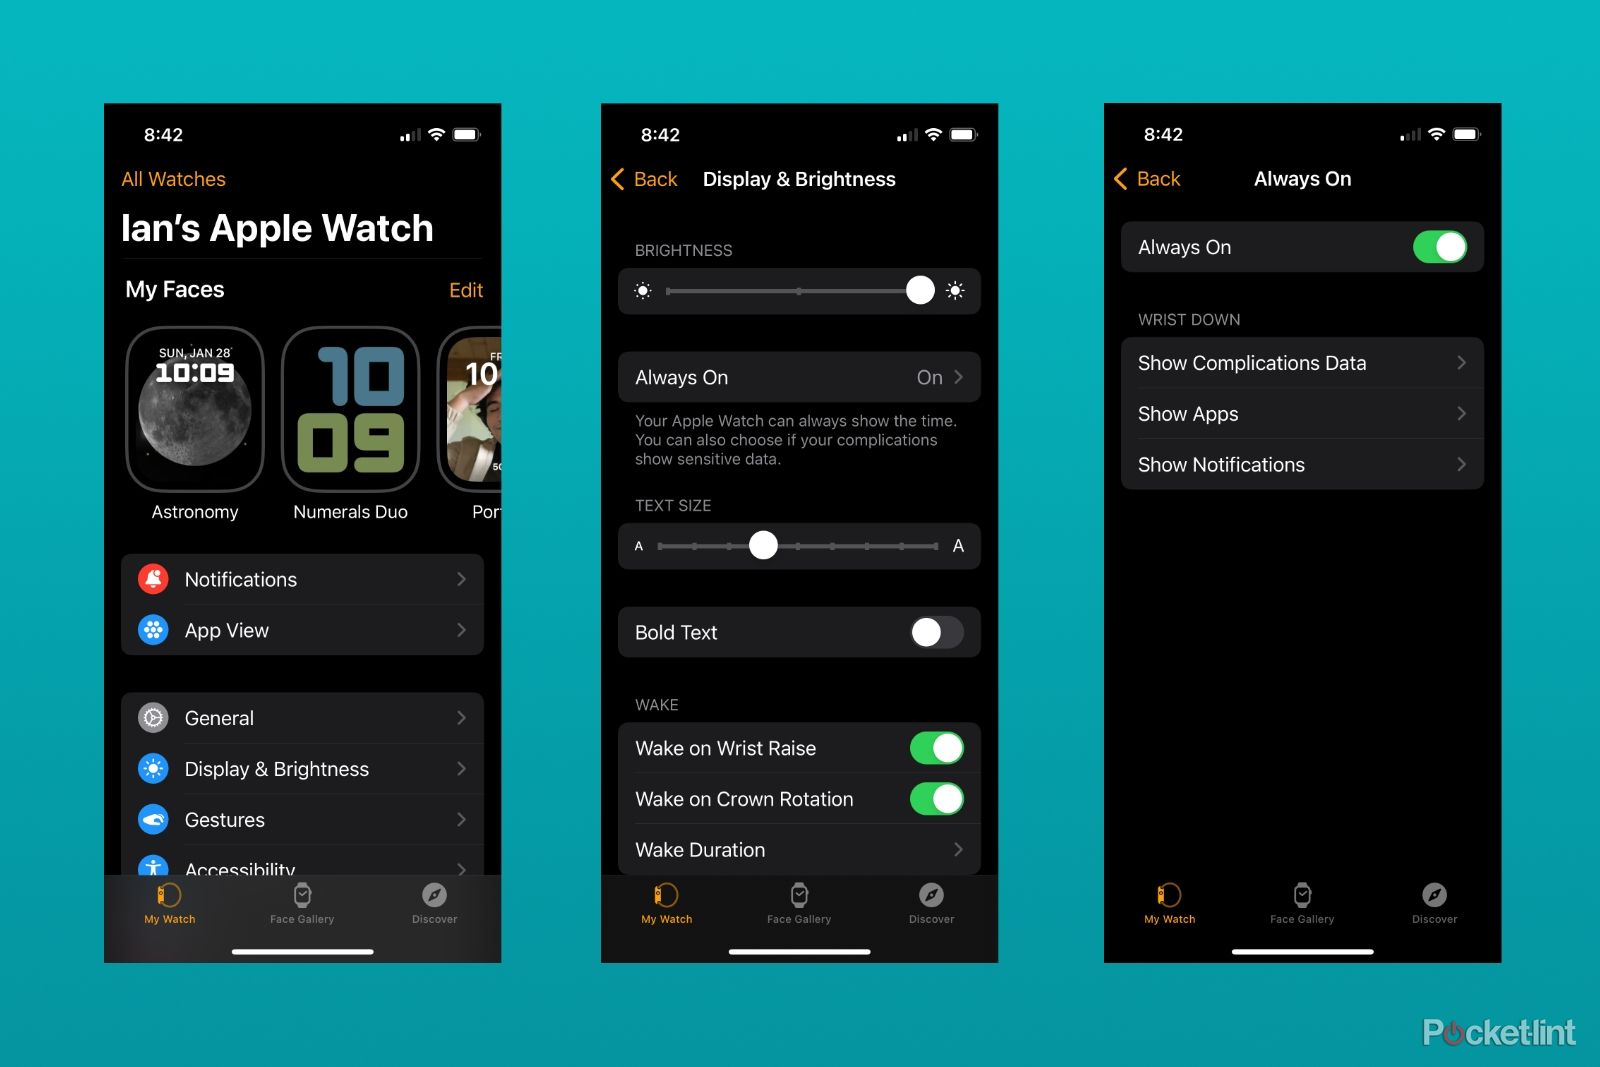 The Display & Brightness menus in the Apple Watch app.